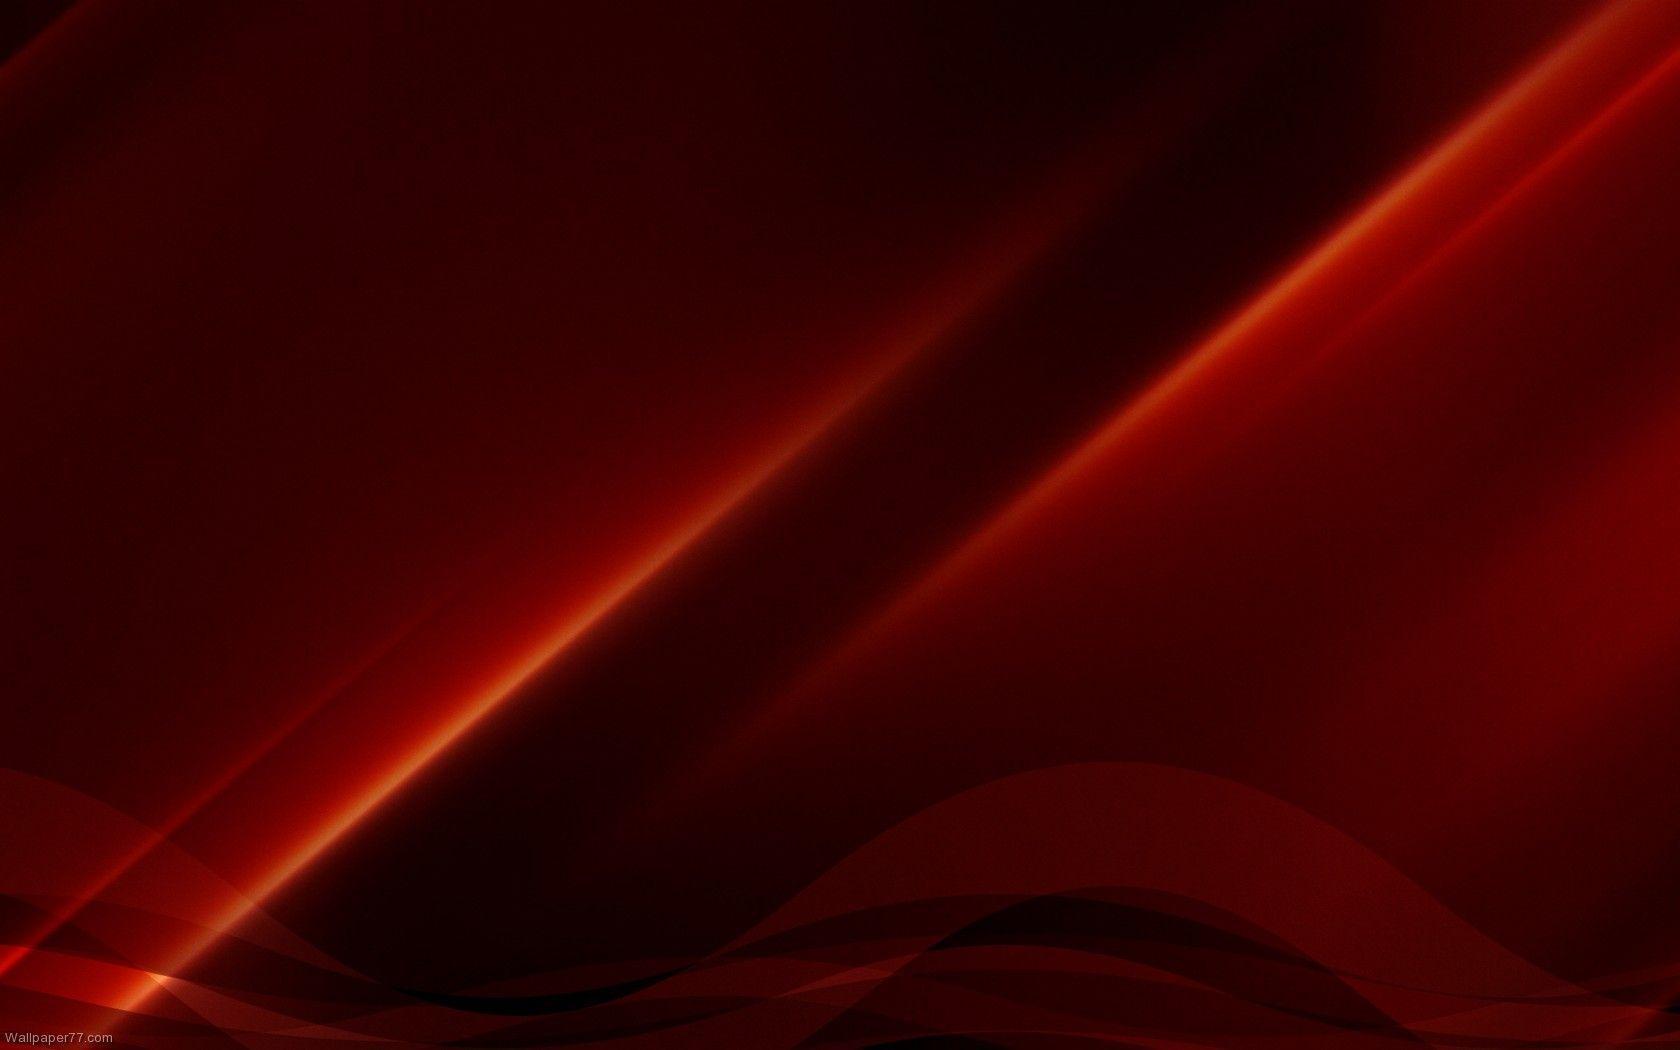 Một hình nền tường màu đỏ đậm sẽ giúp cho Desktop của bạn trở nên thú vị và độc đáo hơn bao giờ hết. Đừng bỏ lỡ cơ hội tải về miễn phí hình nền tường này với kích thước 1680x1050 và sử dụng cho máy tính của mình ngay hôm nay.